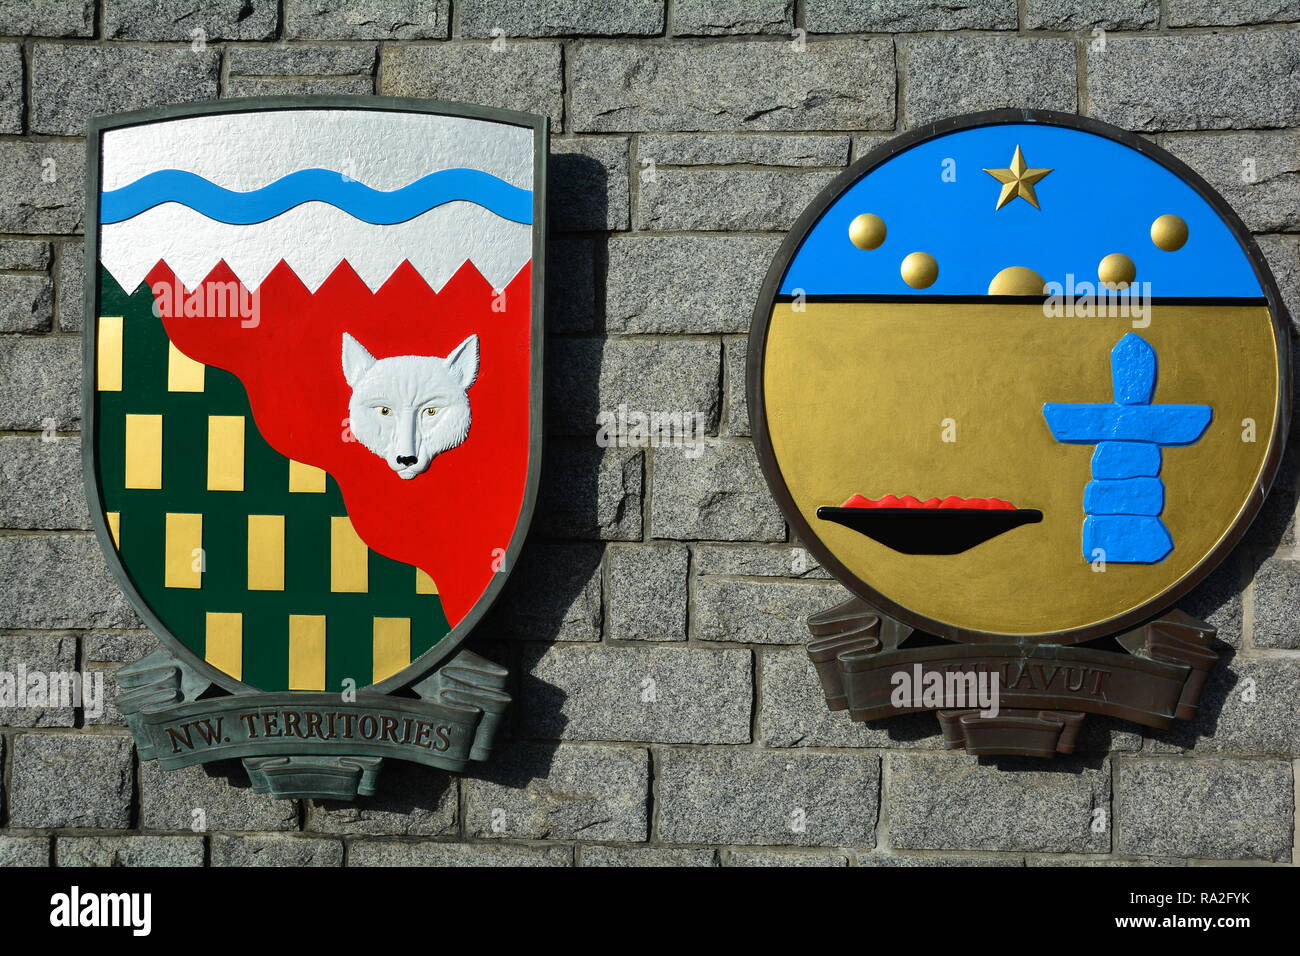 Wappen für die Northwest Territories und Nunavut hängen an einer Felswand in Victoria BC, Kanada. Stockfoto